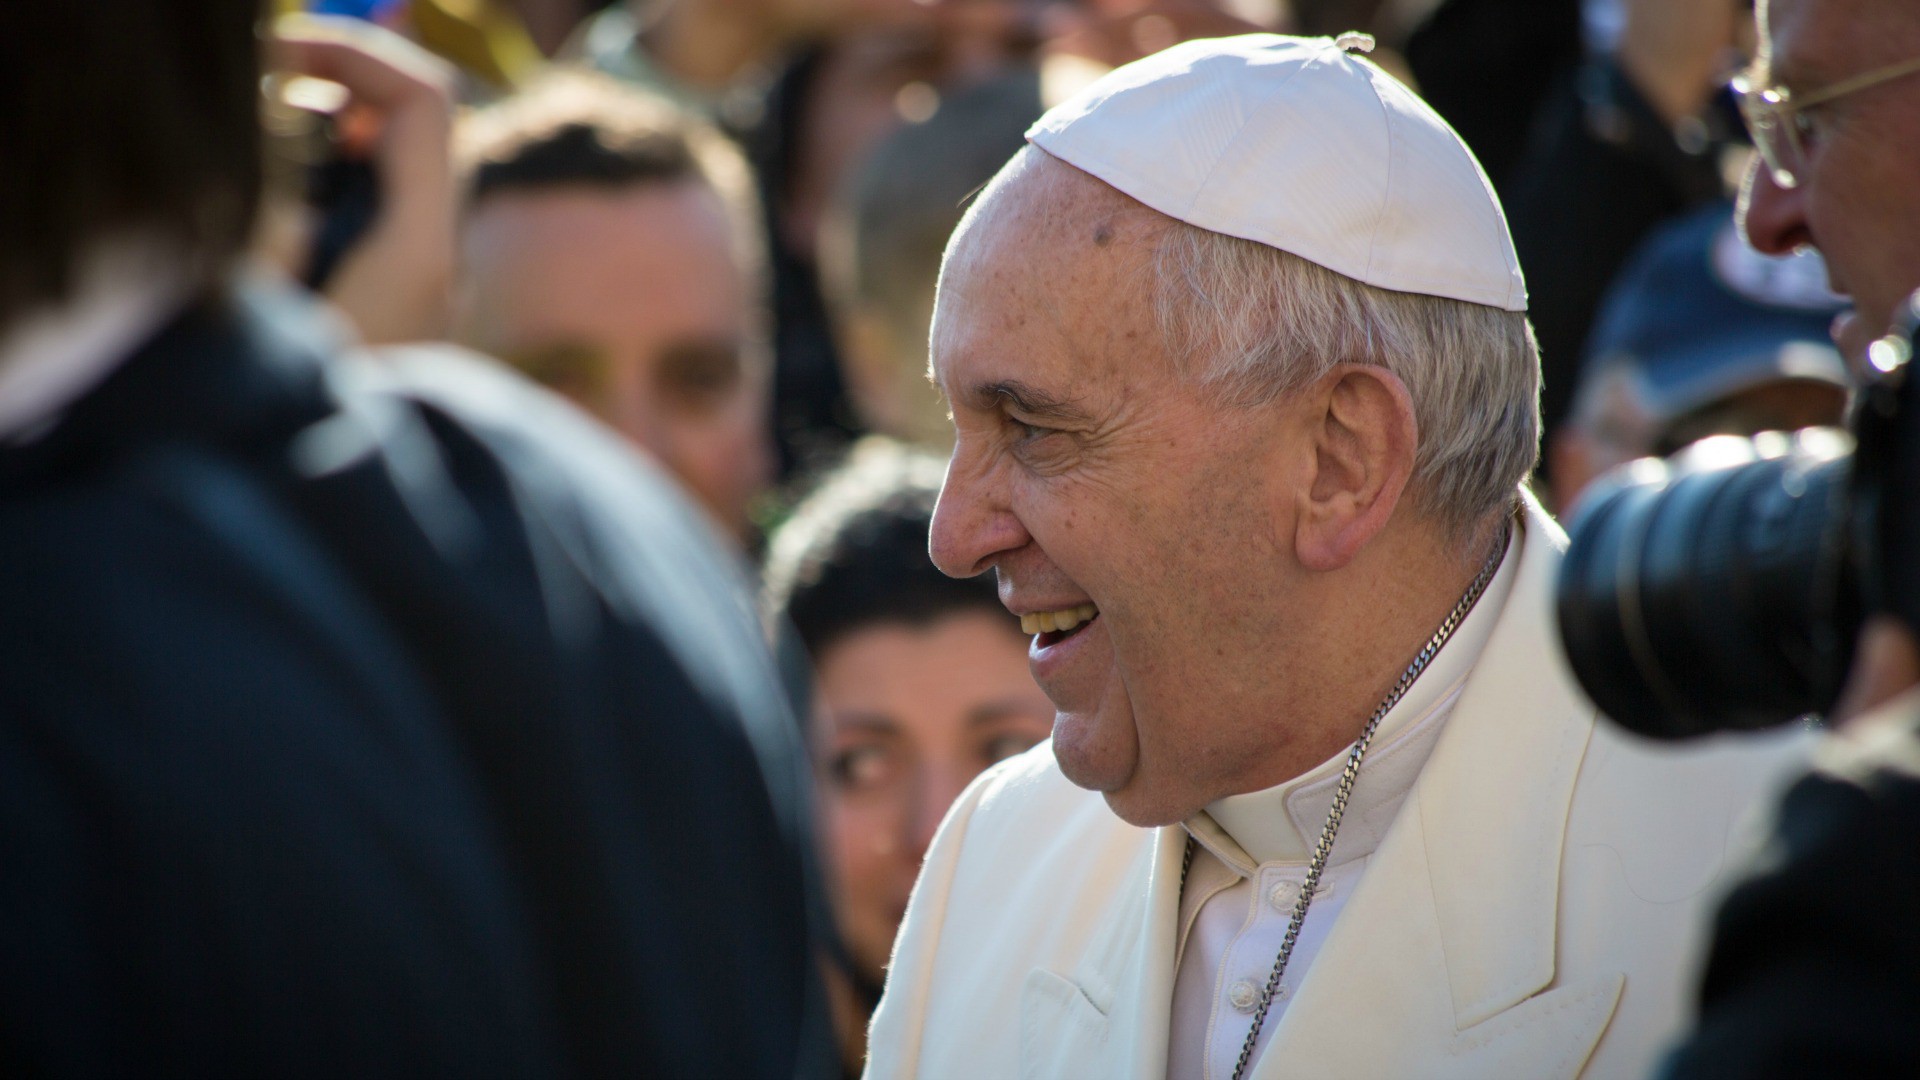 Le pape François lors d'une audience en février 2015 Place Saint-Pierre (Photo: Andrea Krogmann)